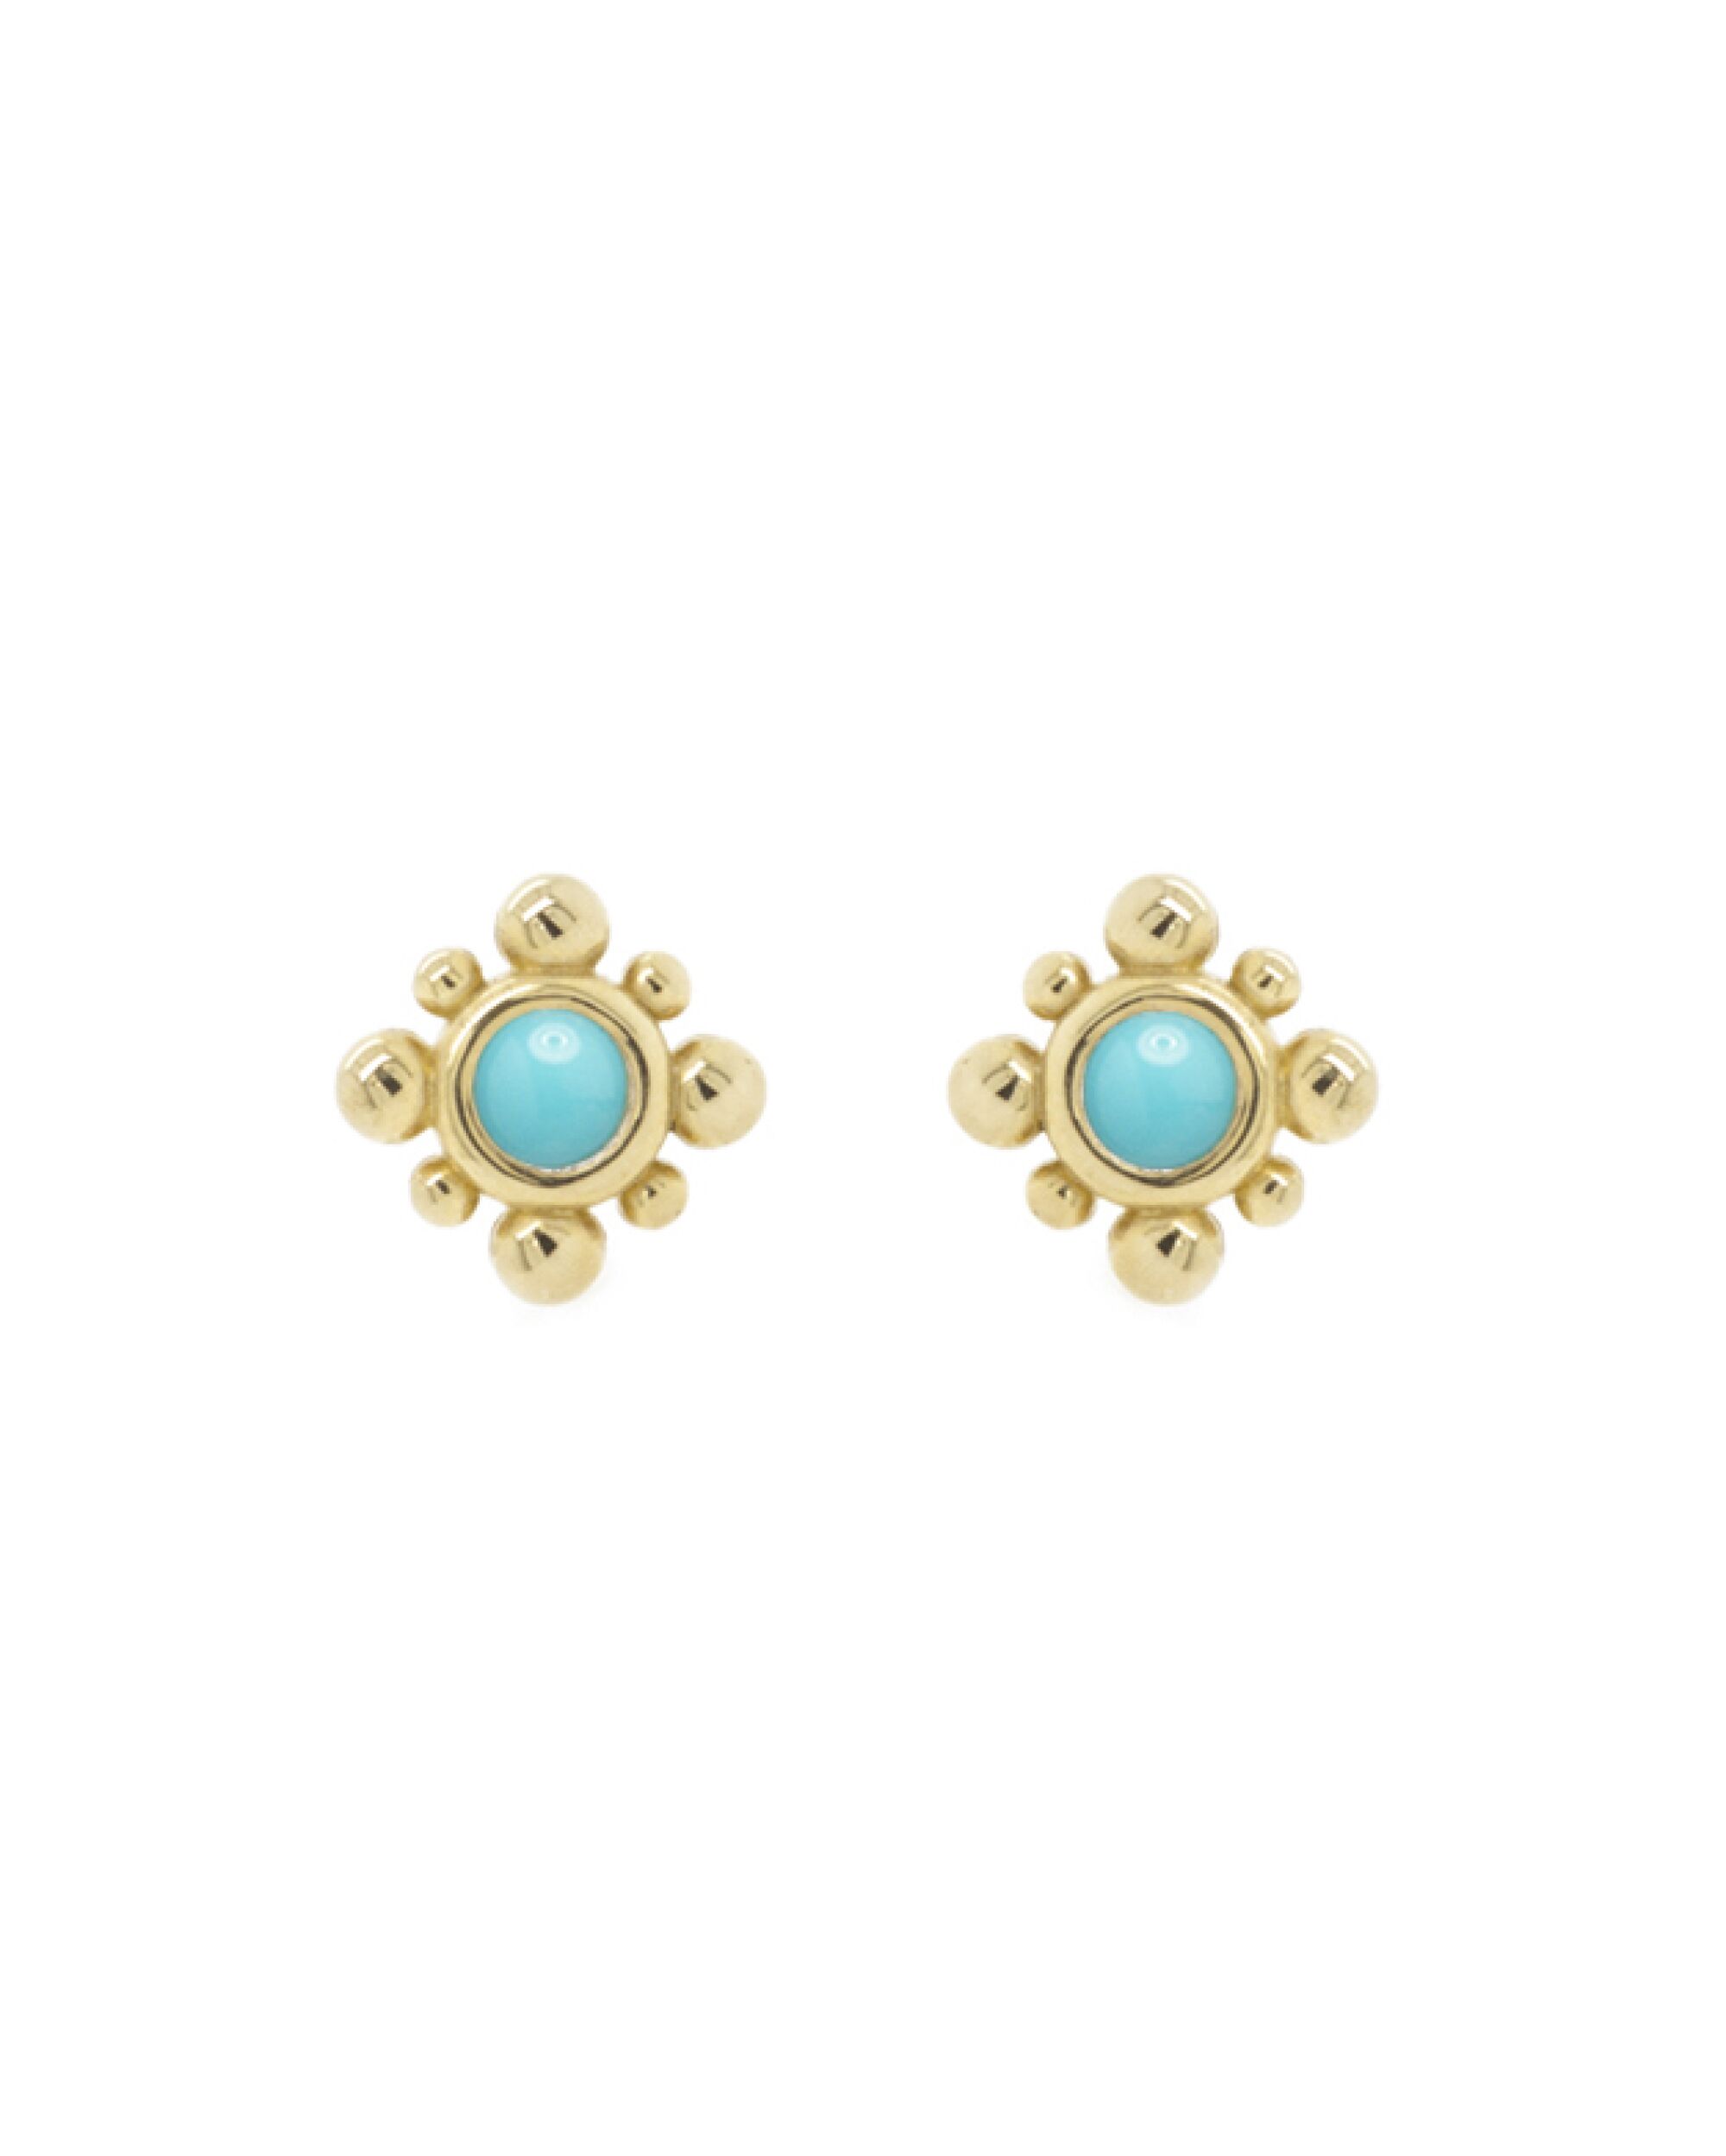 Zoe Chicco's Turquoise Earrings